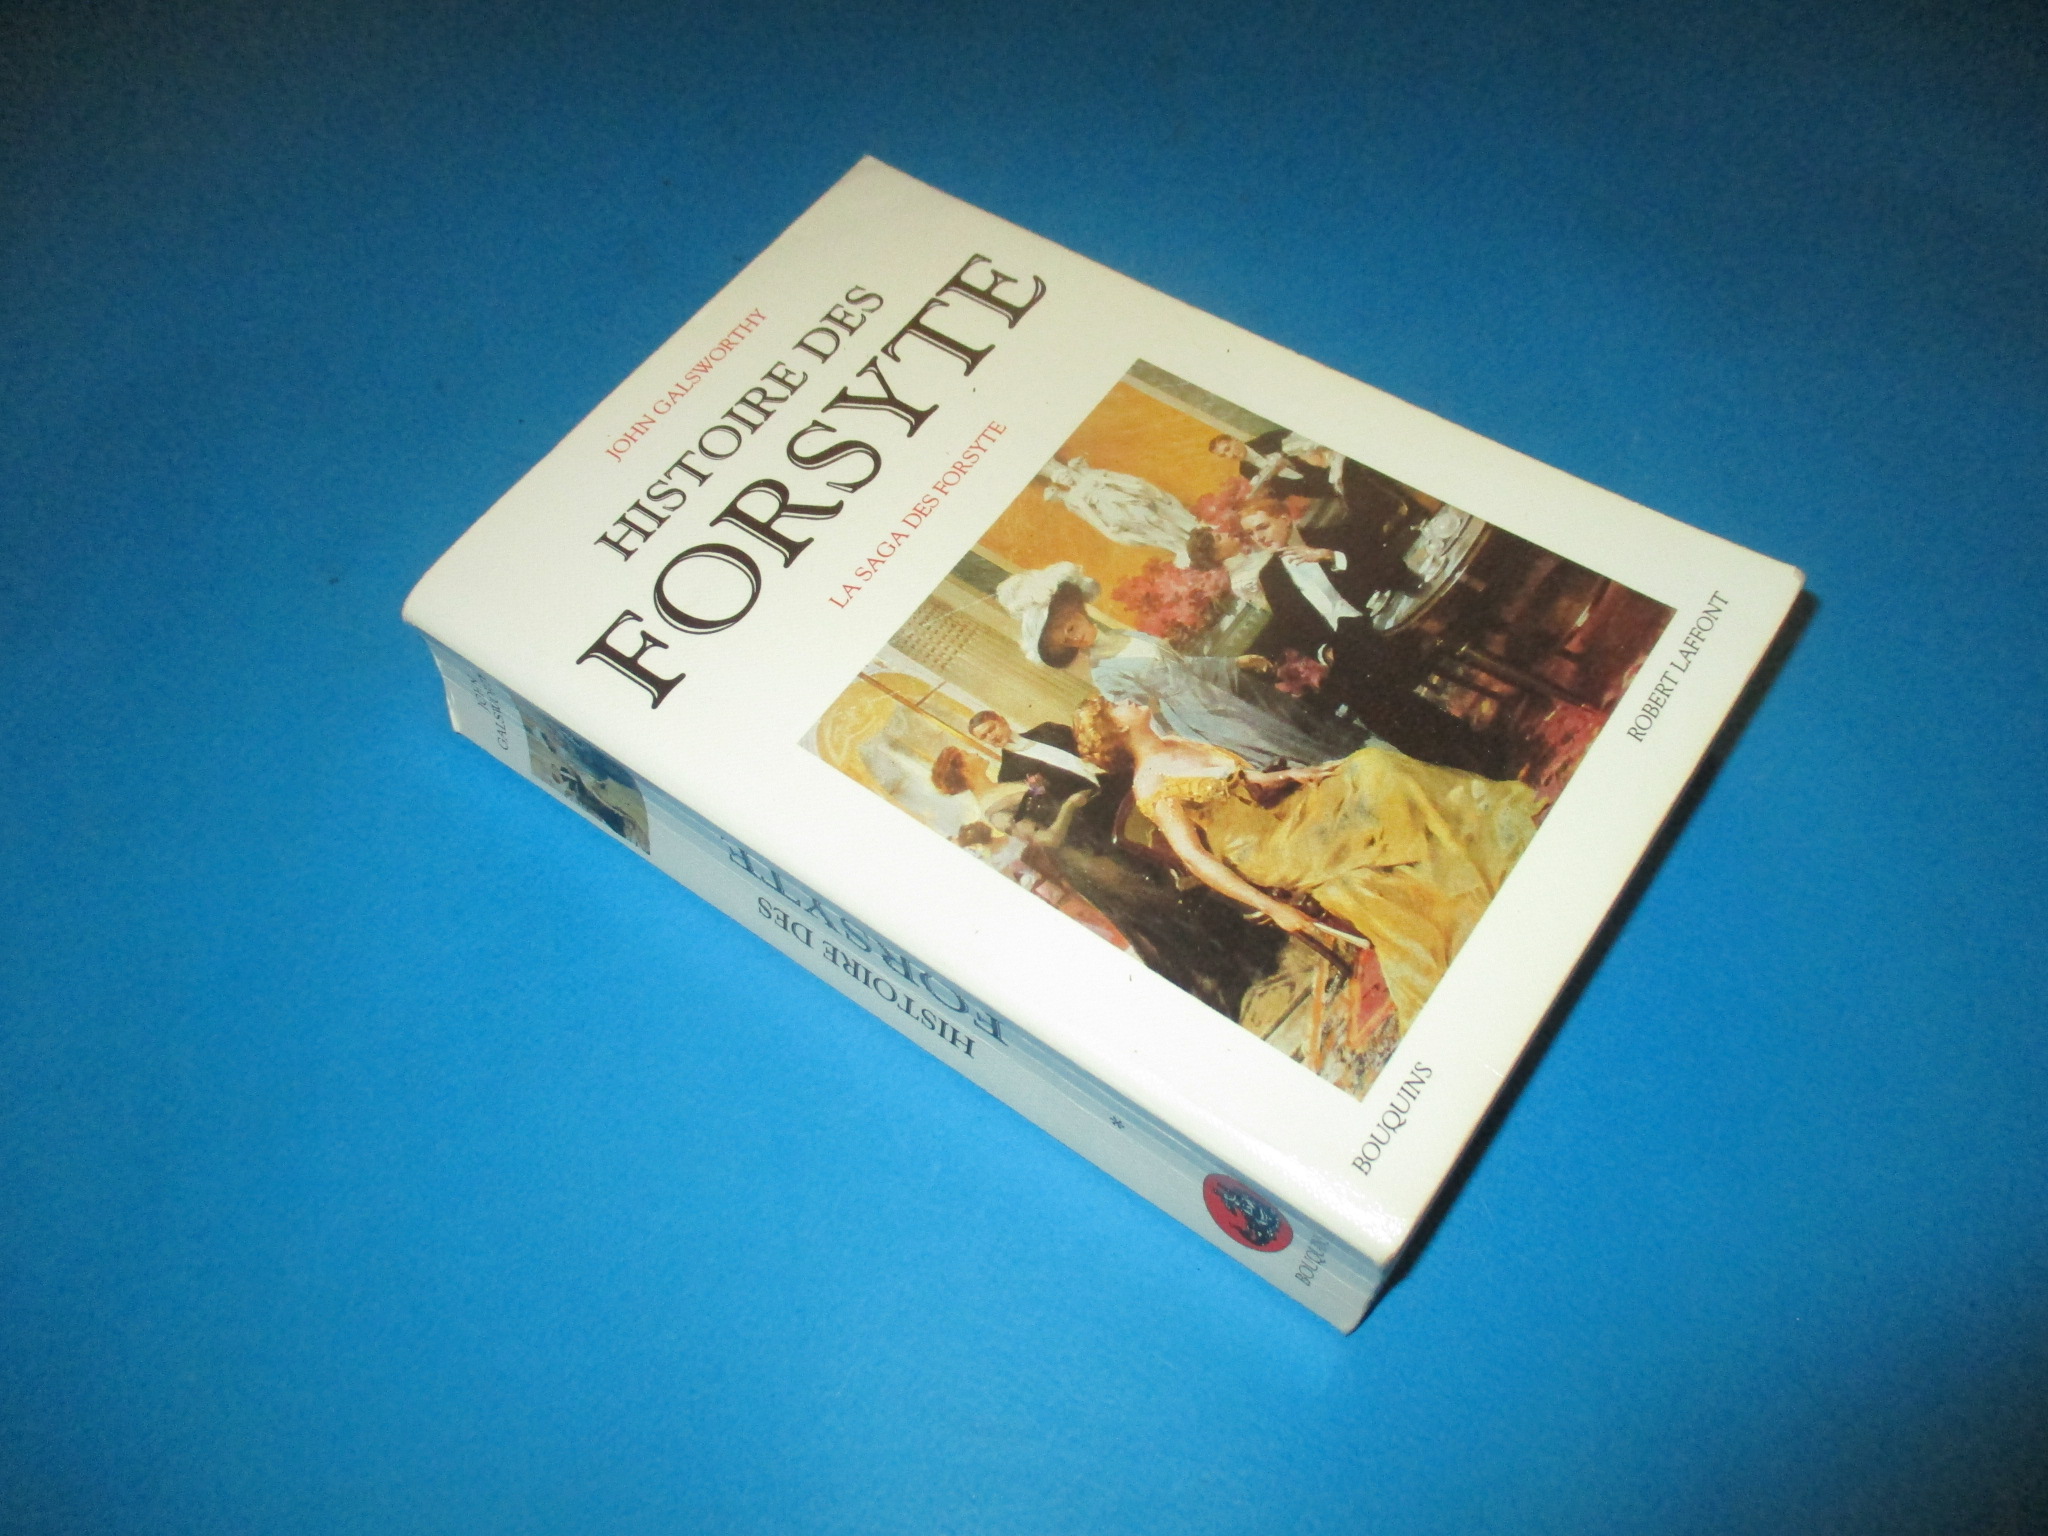 Histoire des Forsyte 1, tome 1, La saga des Forsyte, John Galsworthy, Bouquins Robert Laffont